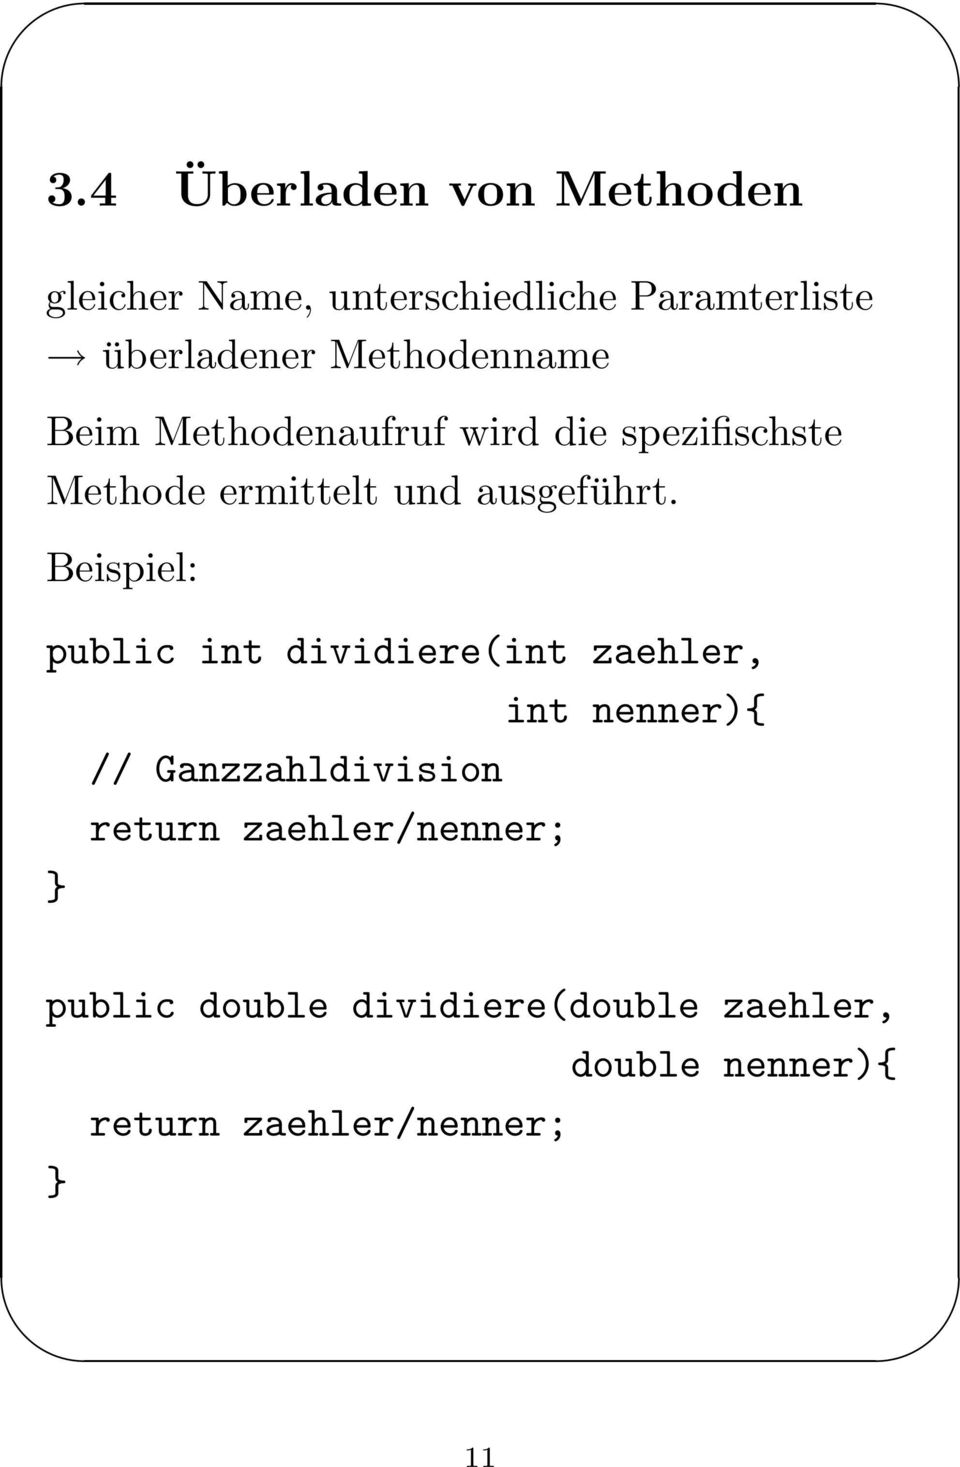 Beispiel: public int dividiere(int zaehler, int nenner){ // Ganzzahldivision return